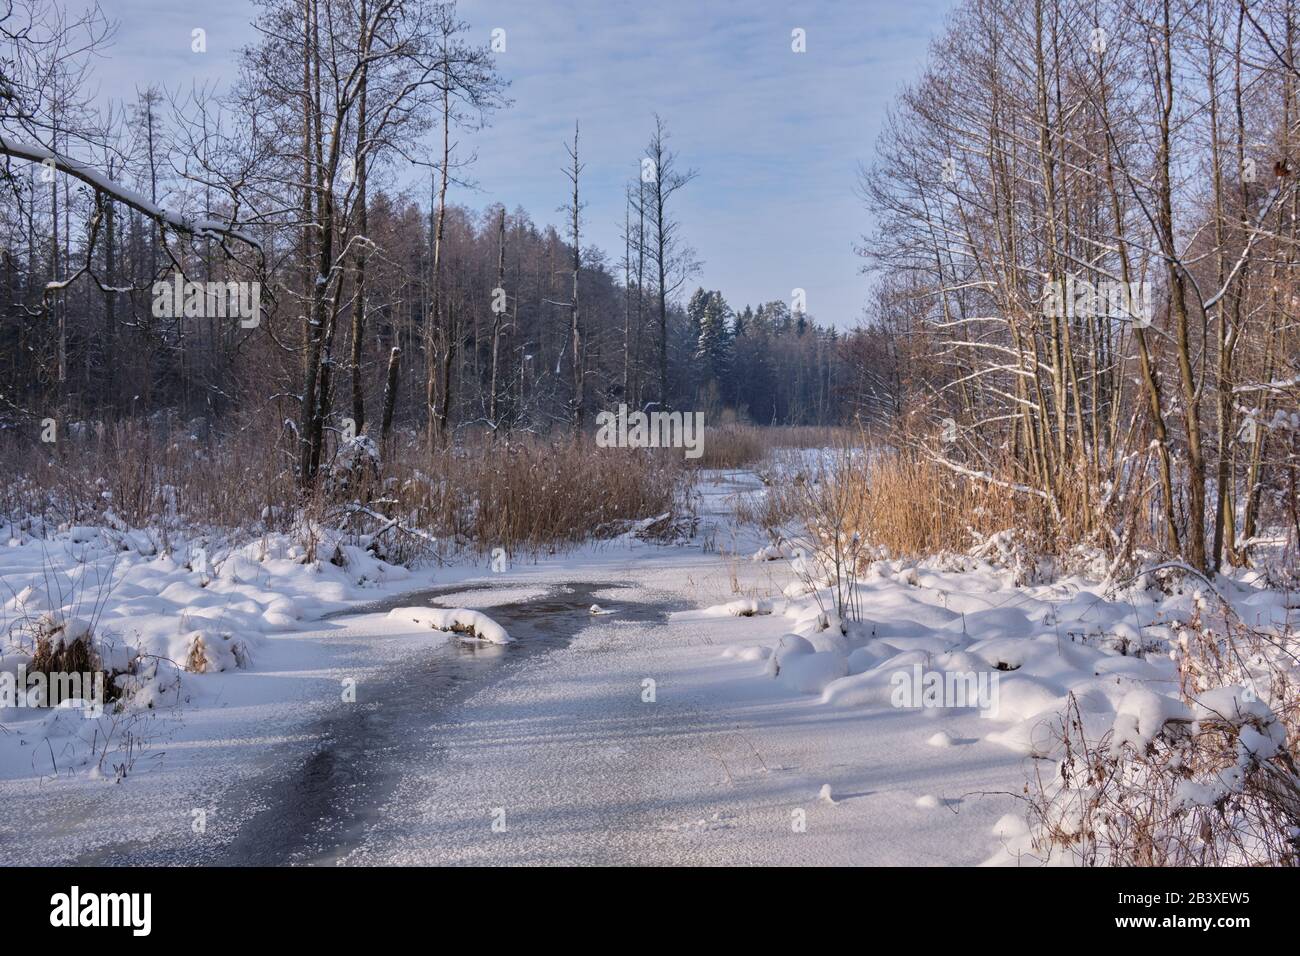 Paysage d'hiver de la rivière gelée Lesna en journée ensoleillée avec de la neige à roseau sèche enveloppée en premier plan, région de Podlasie, Pologne, Europe Banque D'Images